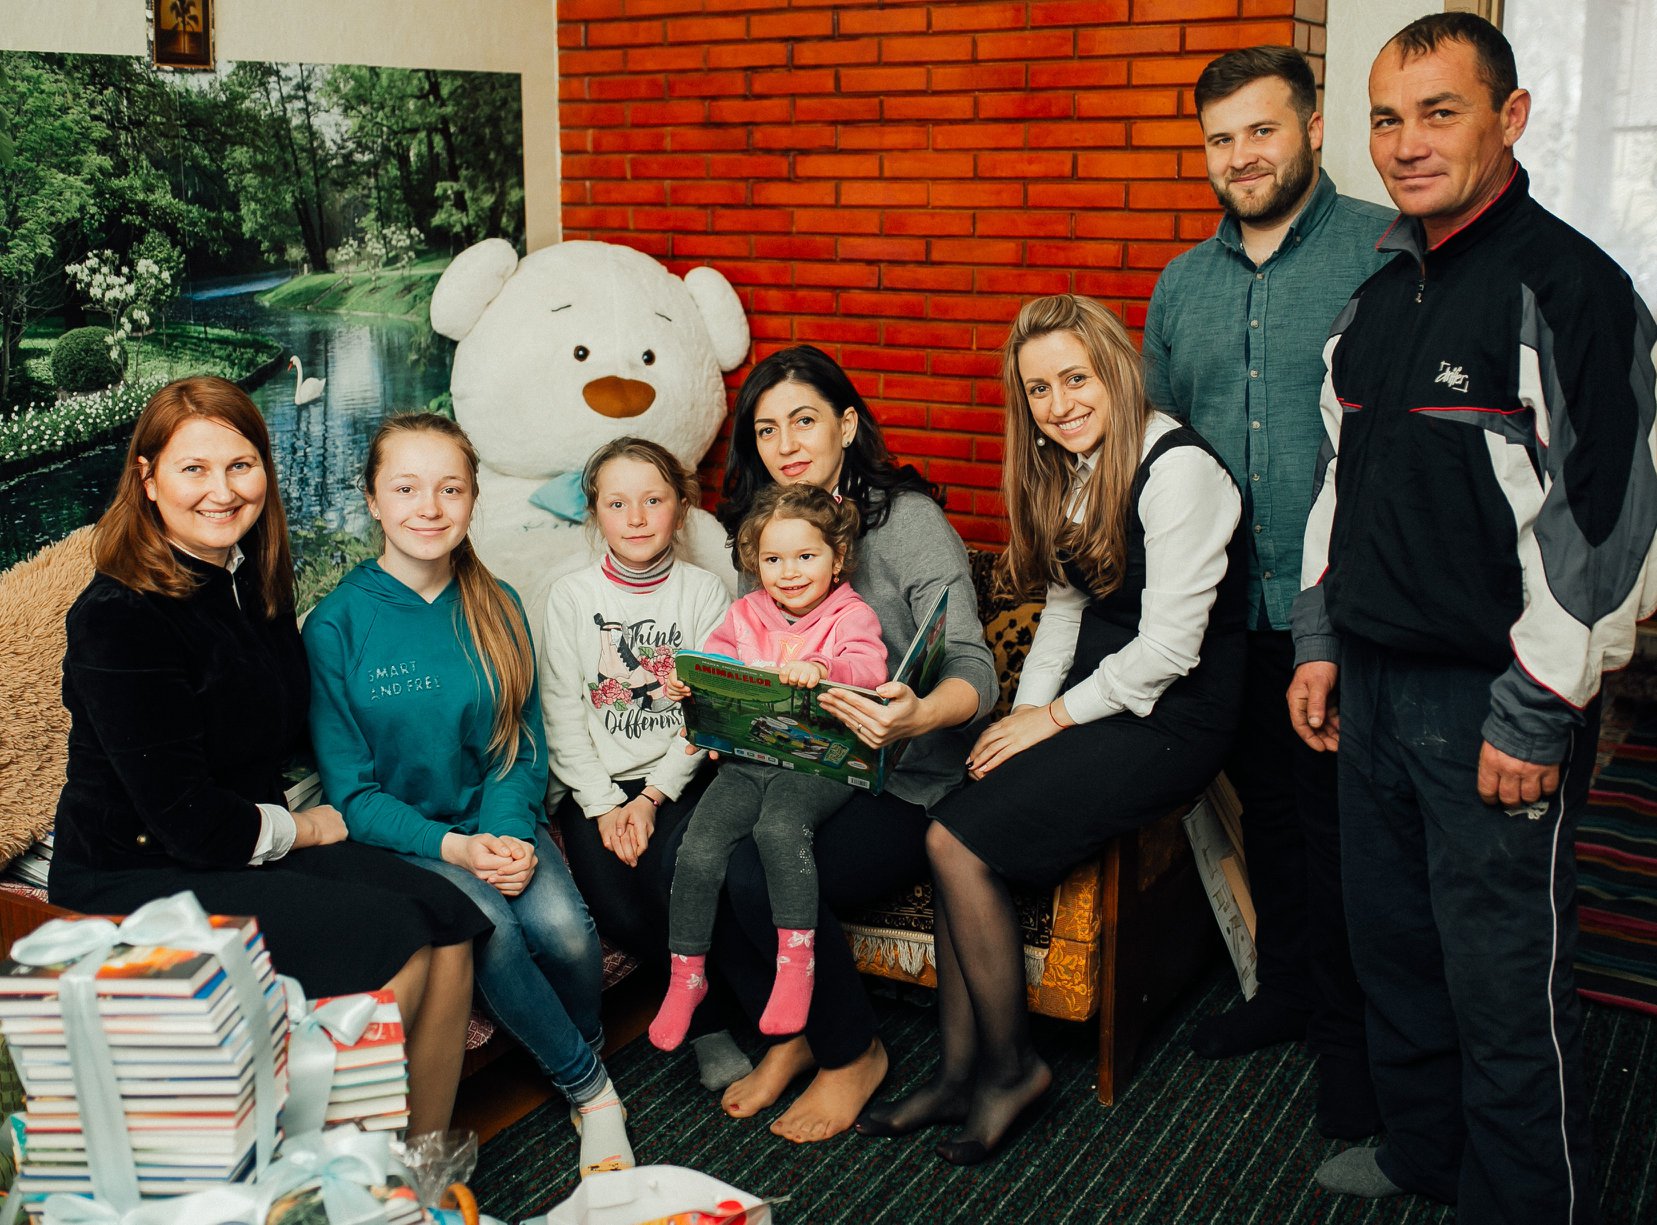 Fundația Edelweiss, Am dat start campaniei de Paști cu surprize și cadouri pentru familiile din Moldova, vlad plahontiuc, pdm pentru moldova, surprize pentru copii, fapte nu vorbe, partidul democrat 